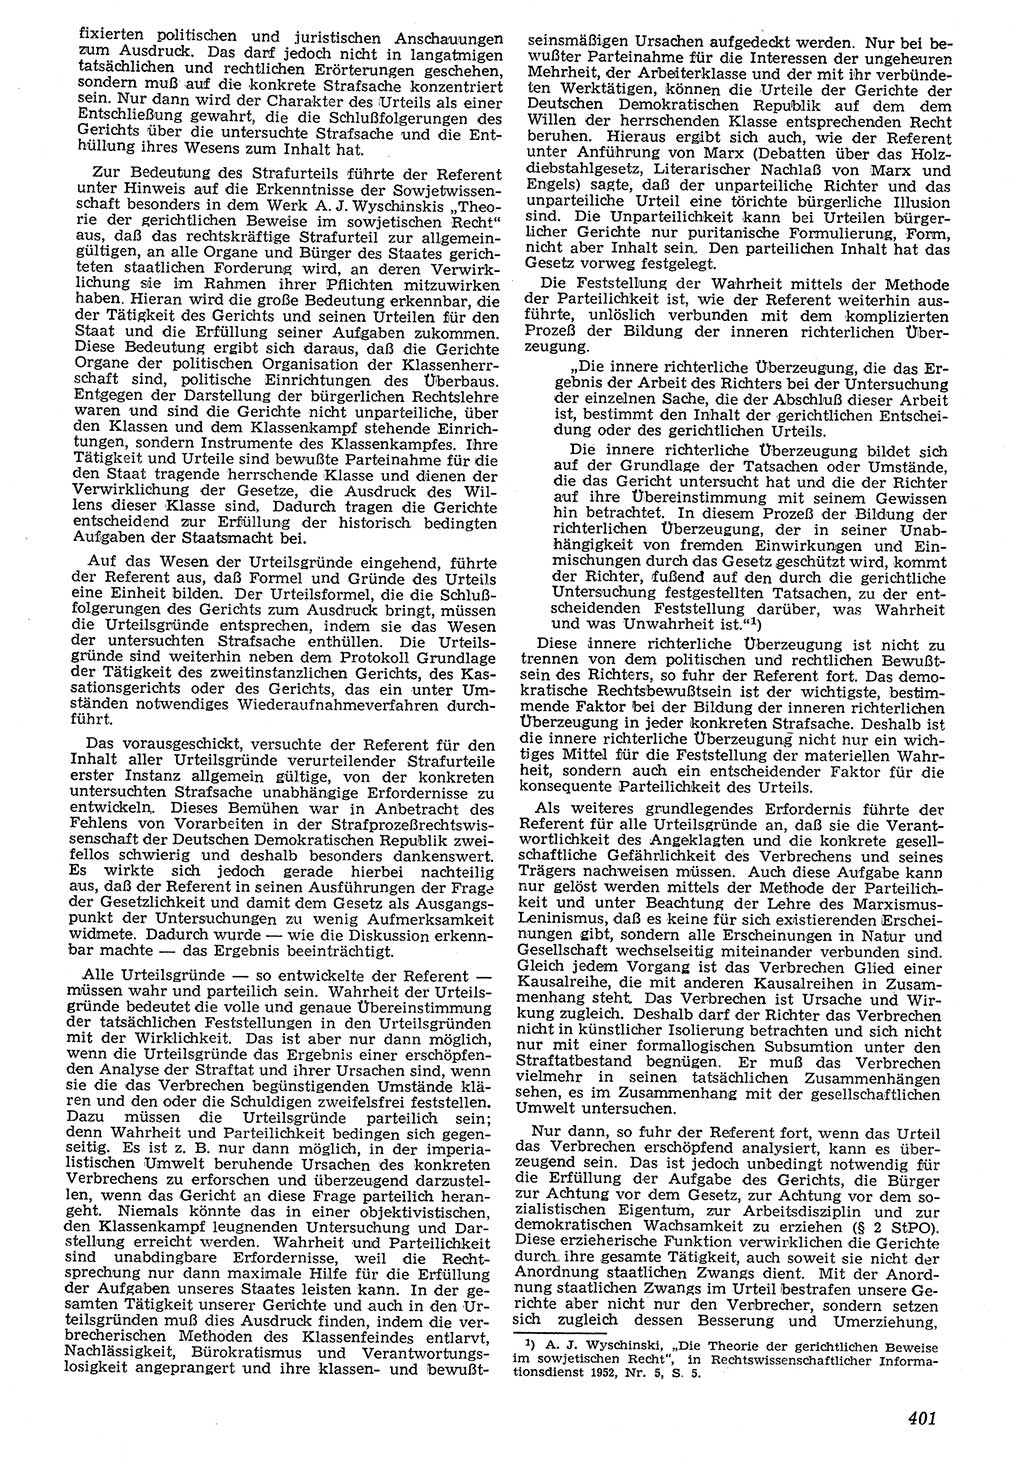 Neue Justiz (NJ), Zeitschrift für Recht und Rechtswissenschaft [Deutsche Demokratische Republik (DDR)], 7. Jahrgang 1953, Seite 401 (NJ DDR 1953, S. 401)